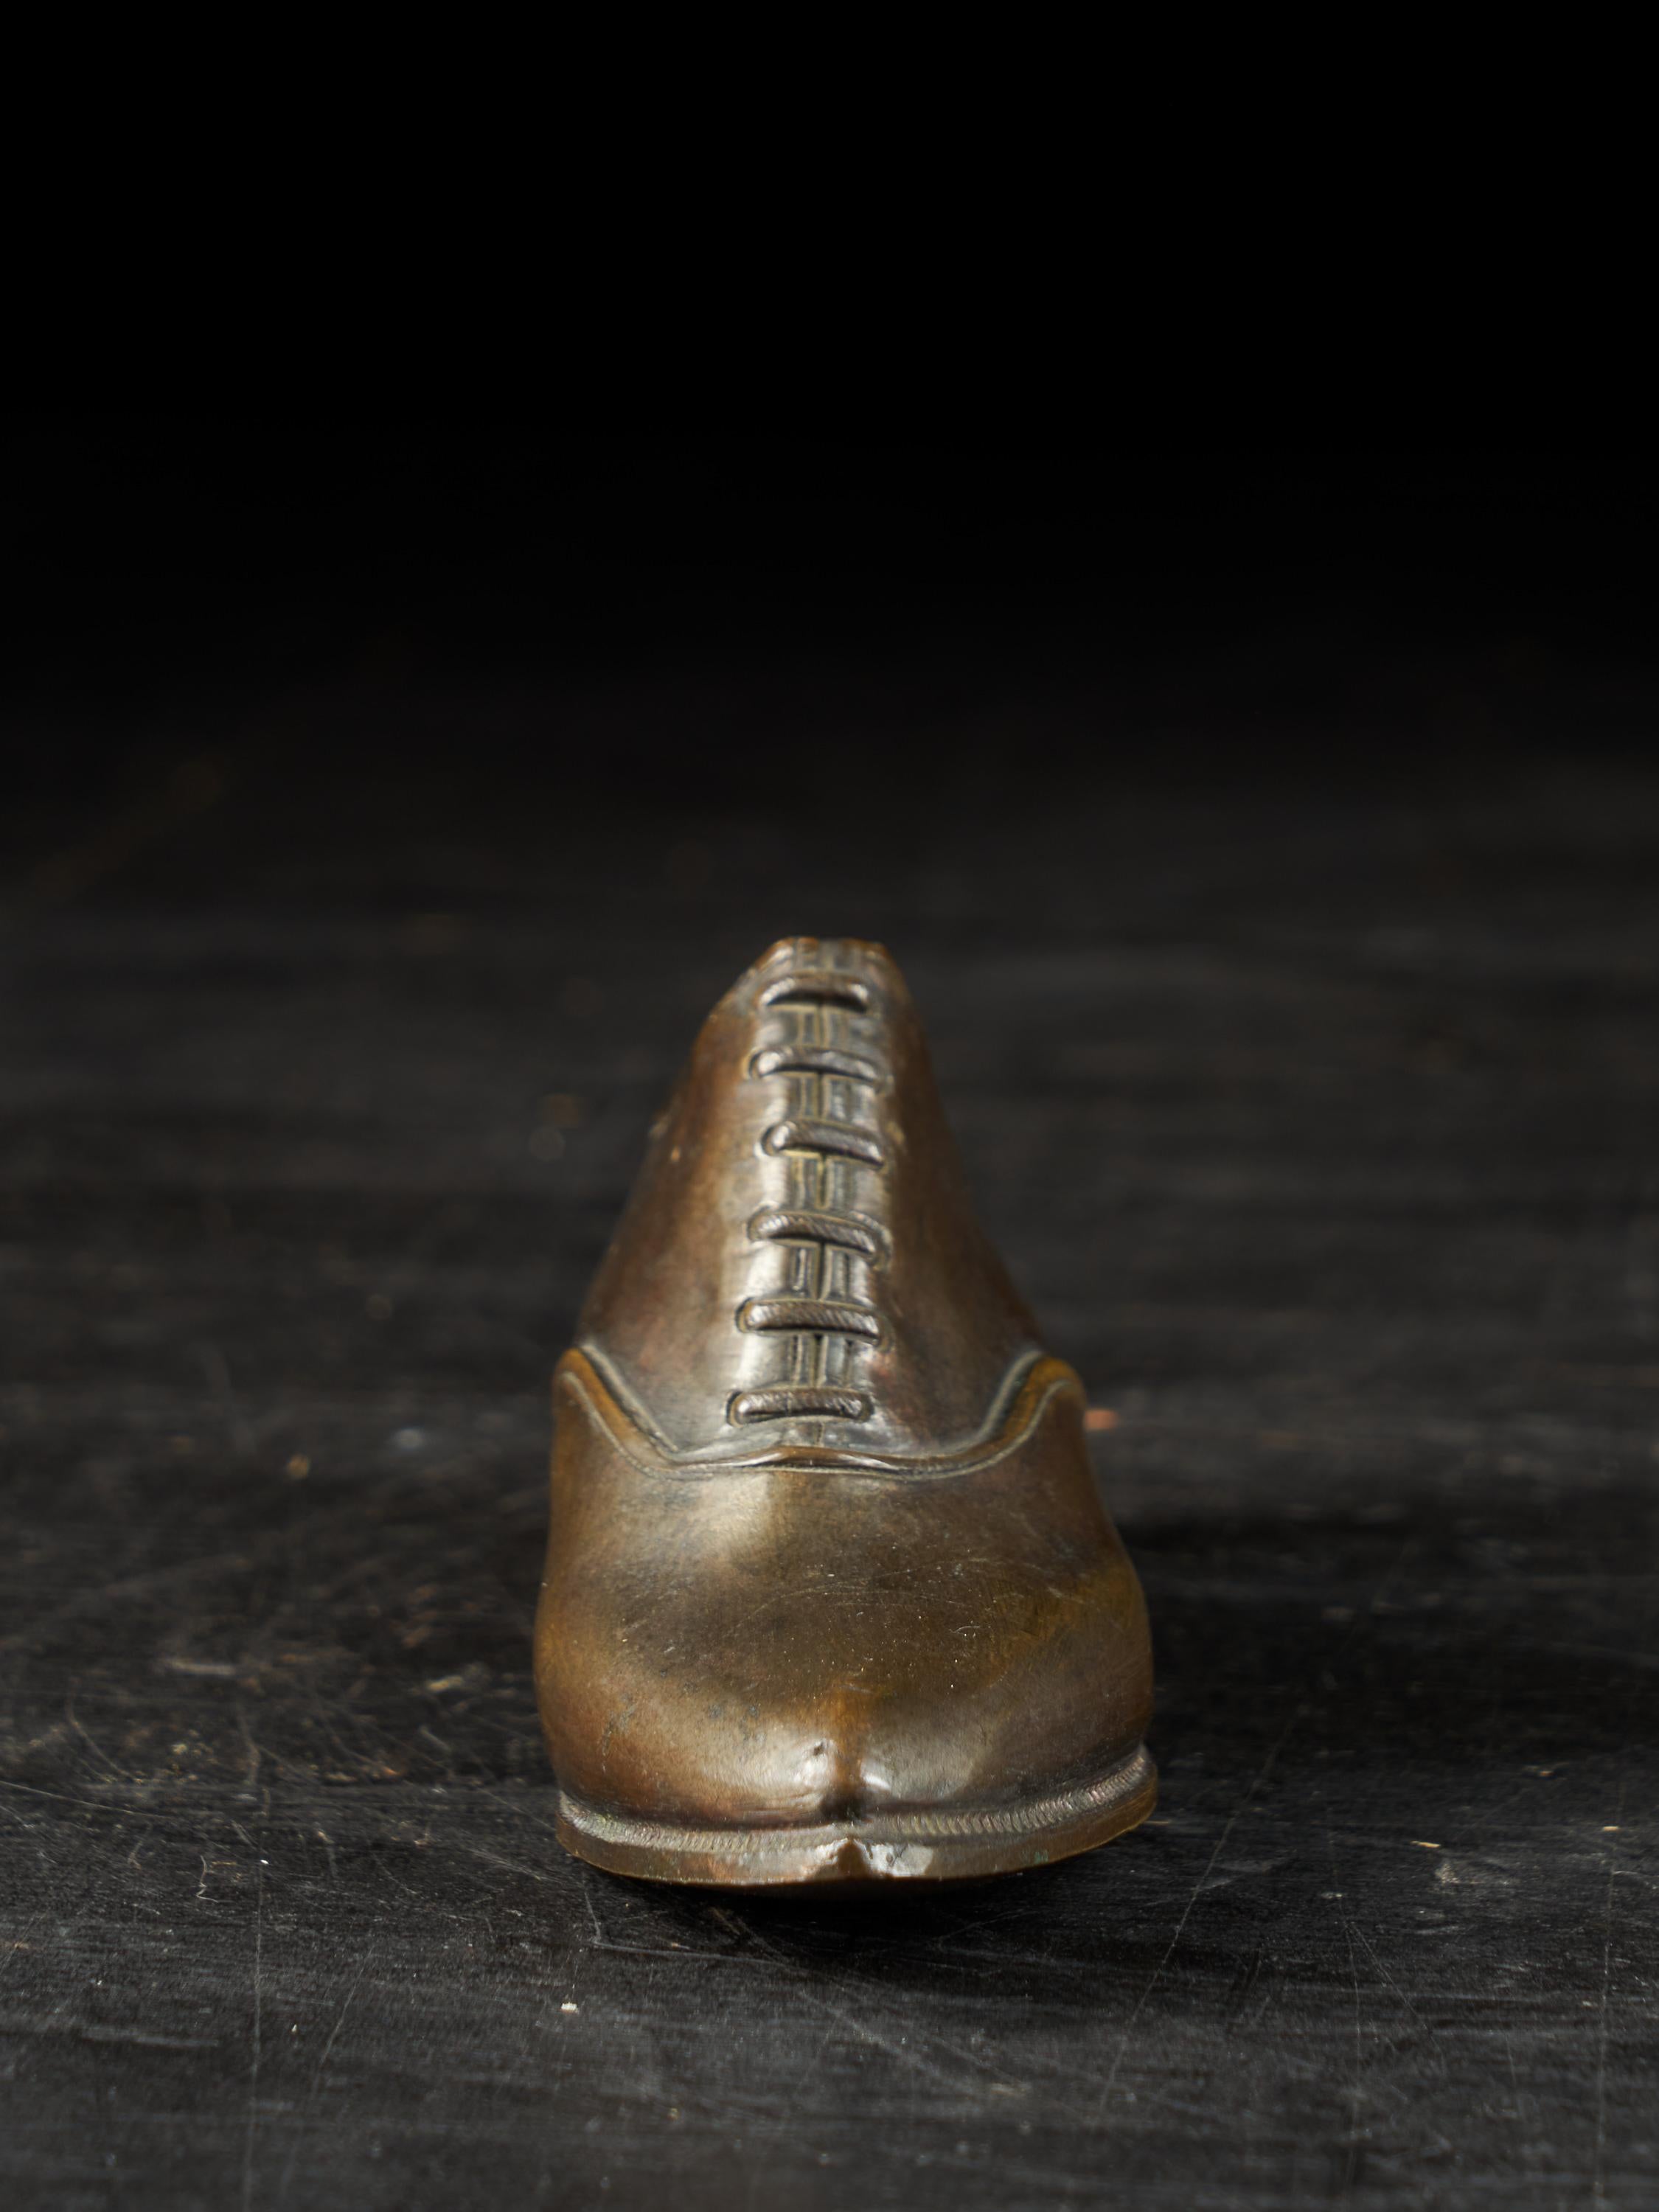 19th century men's shoes